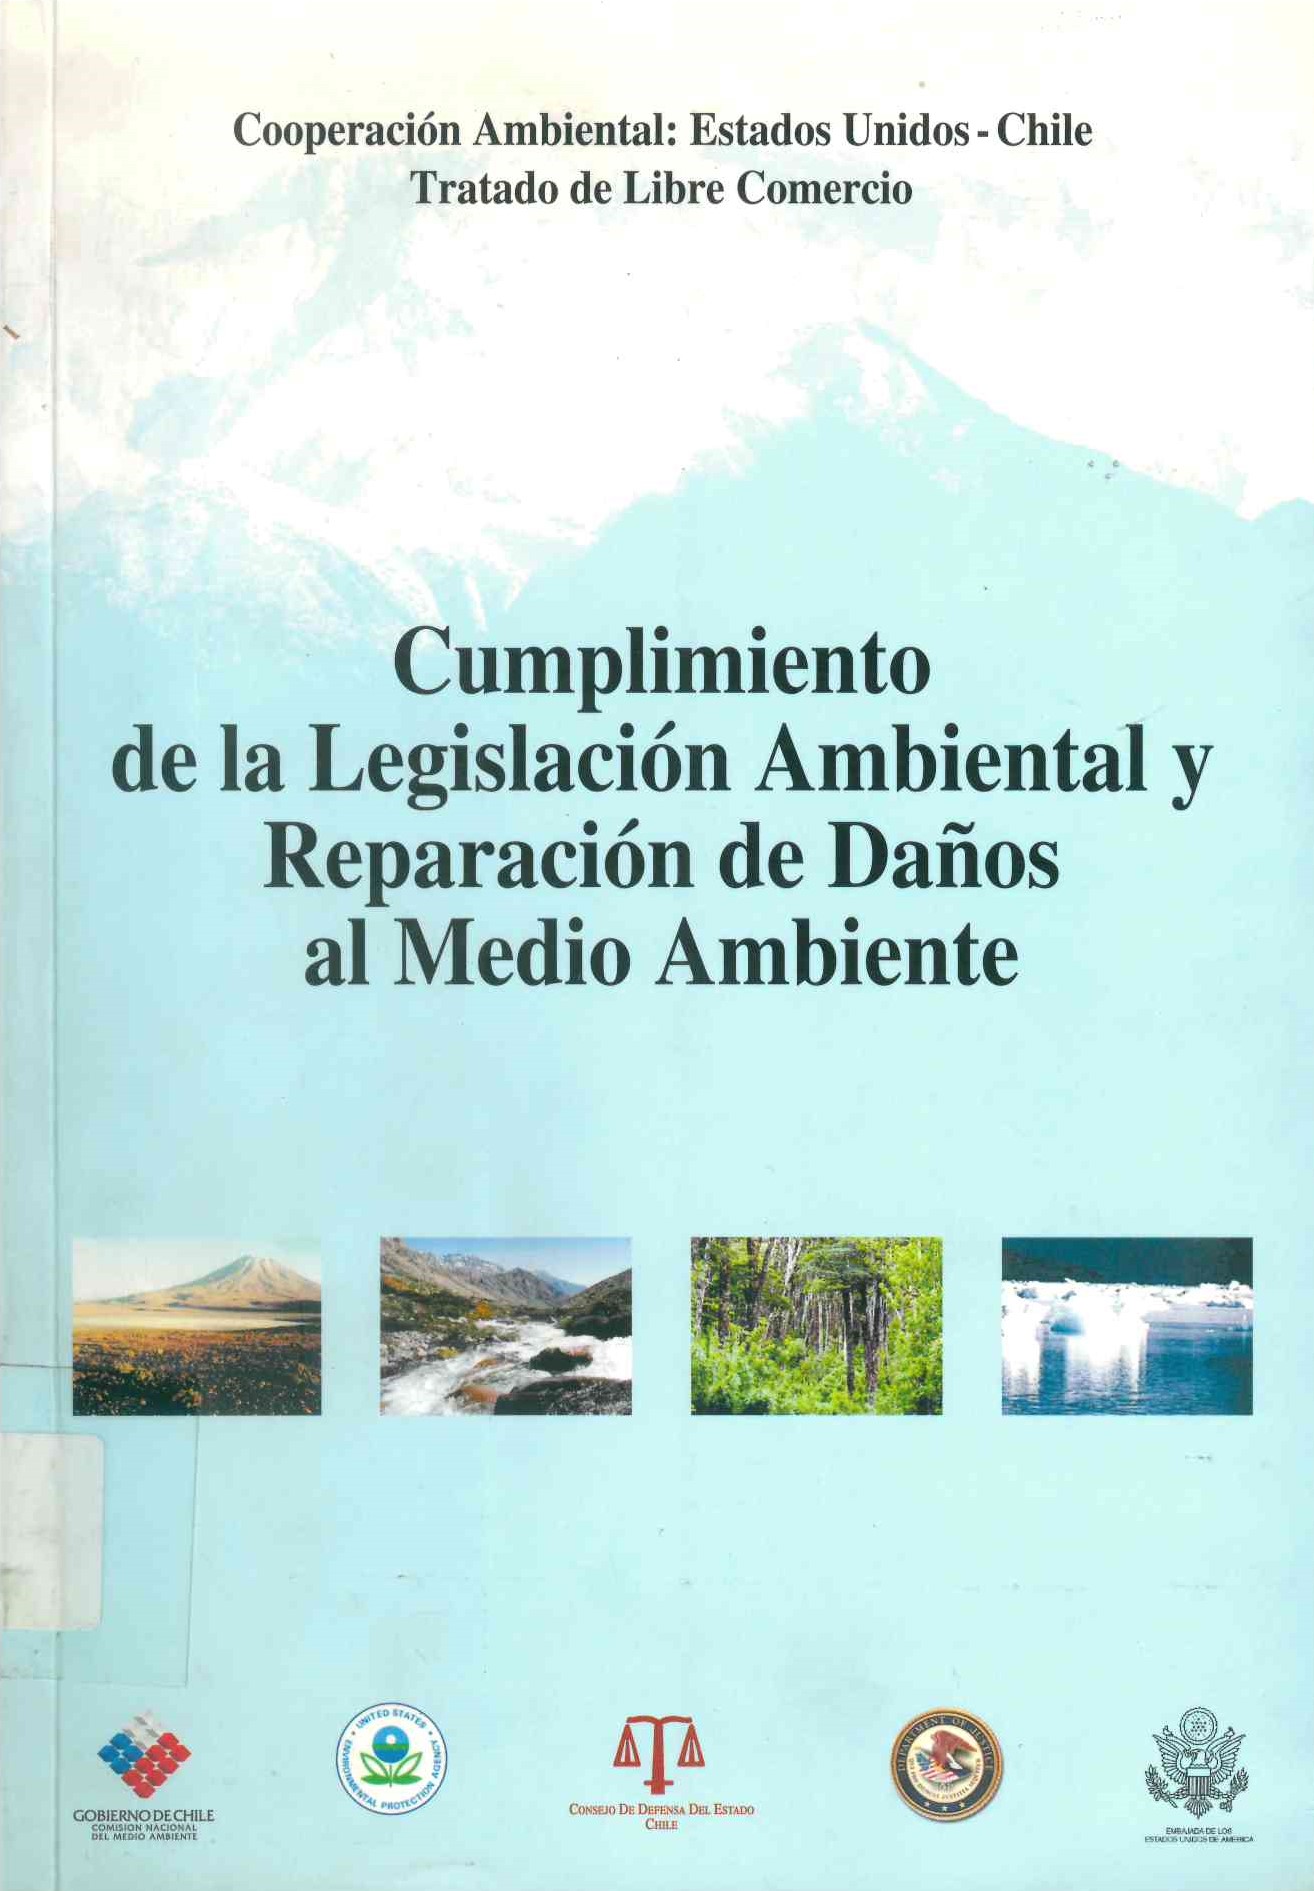 Cumplimiento de la legislacion ambiental y reparacion de daños : cooperación ambiental: Estados Unidos-Chile Tratado de libre comercio